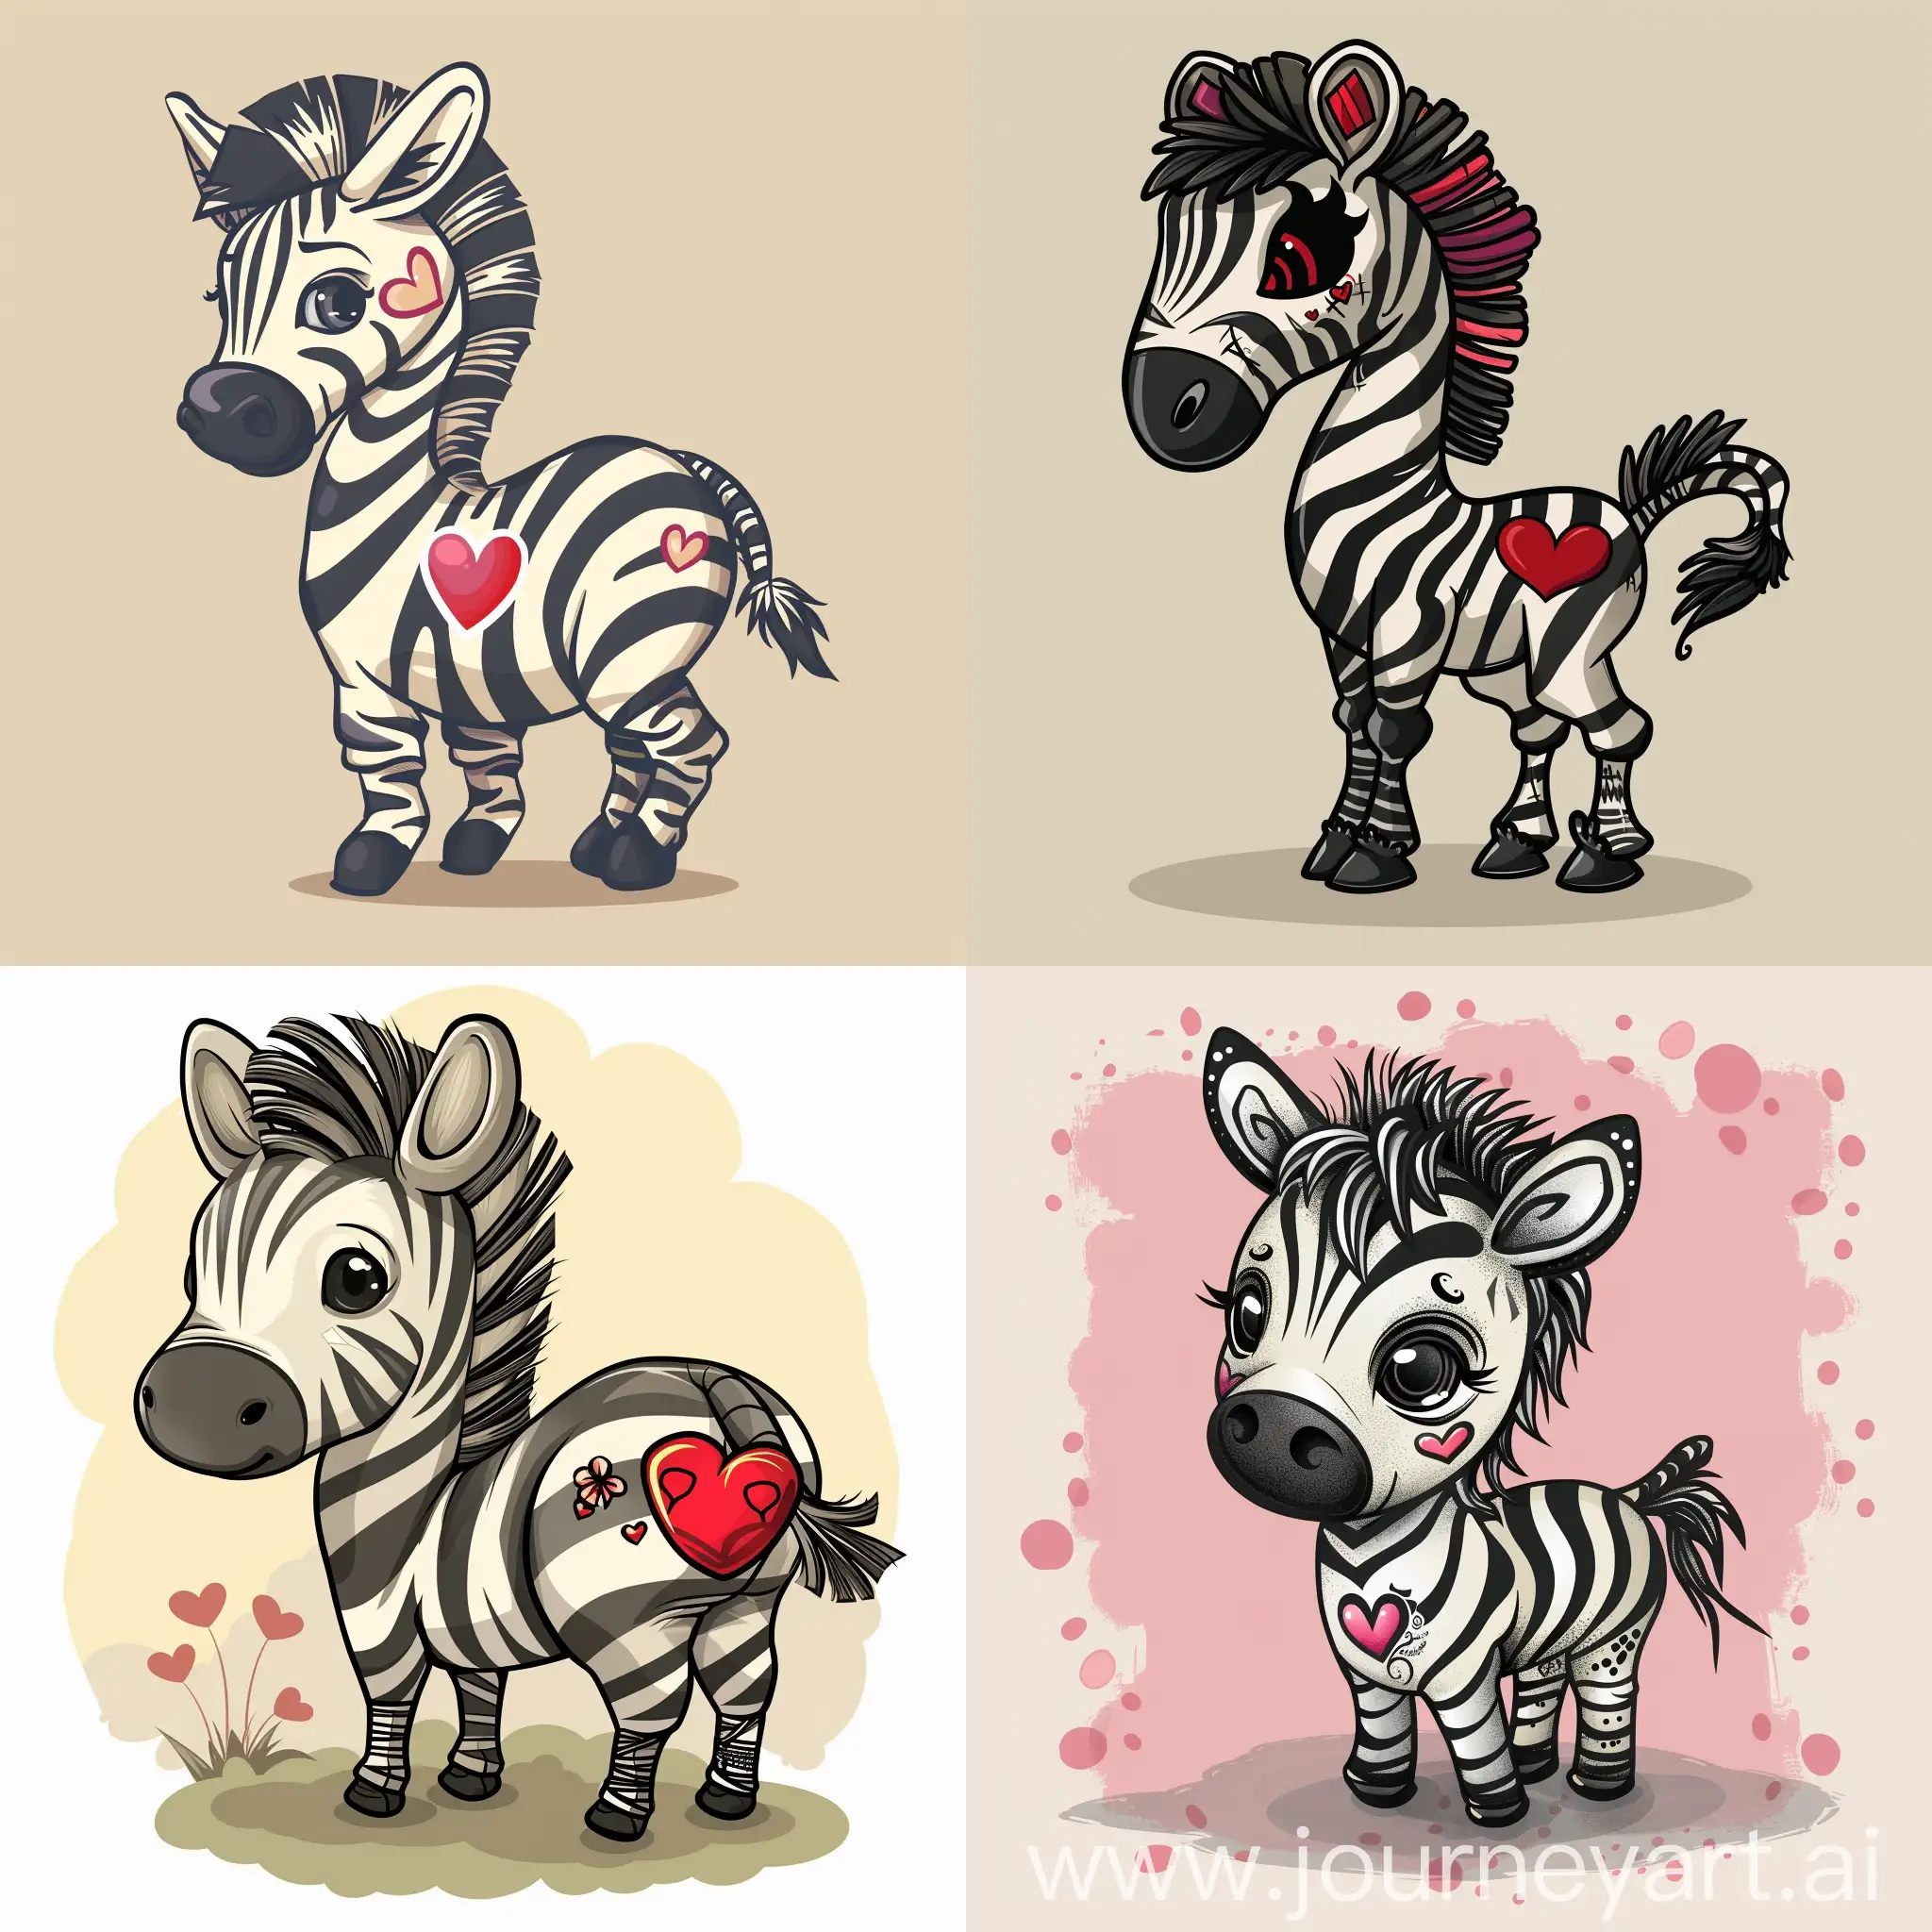 A cartoon of a funky zebra with a love heart tatoo on its rear